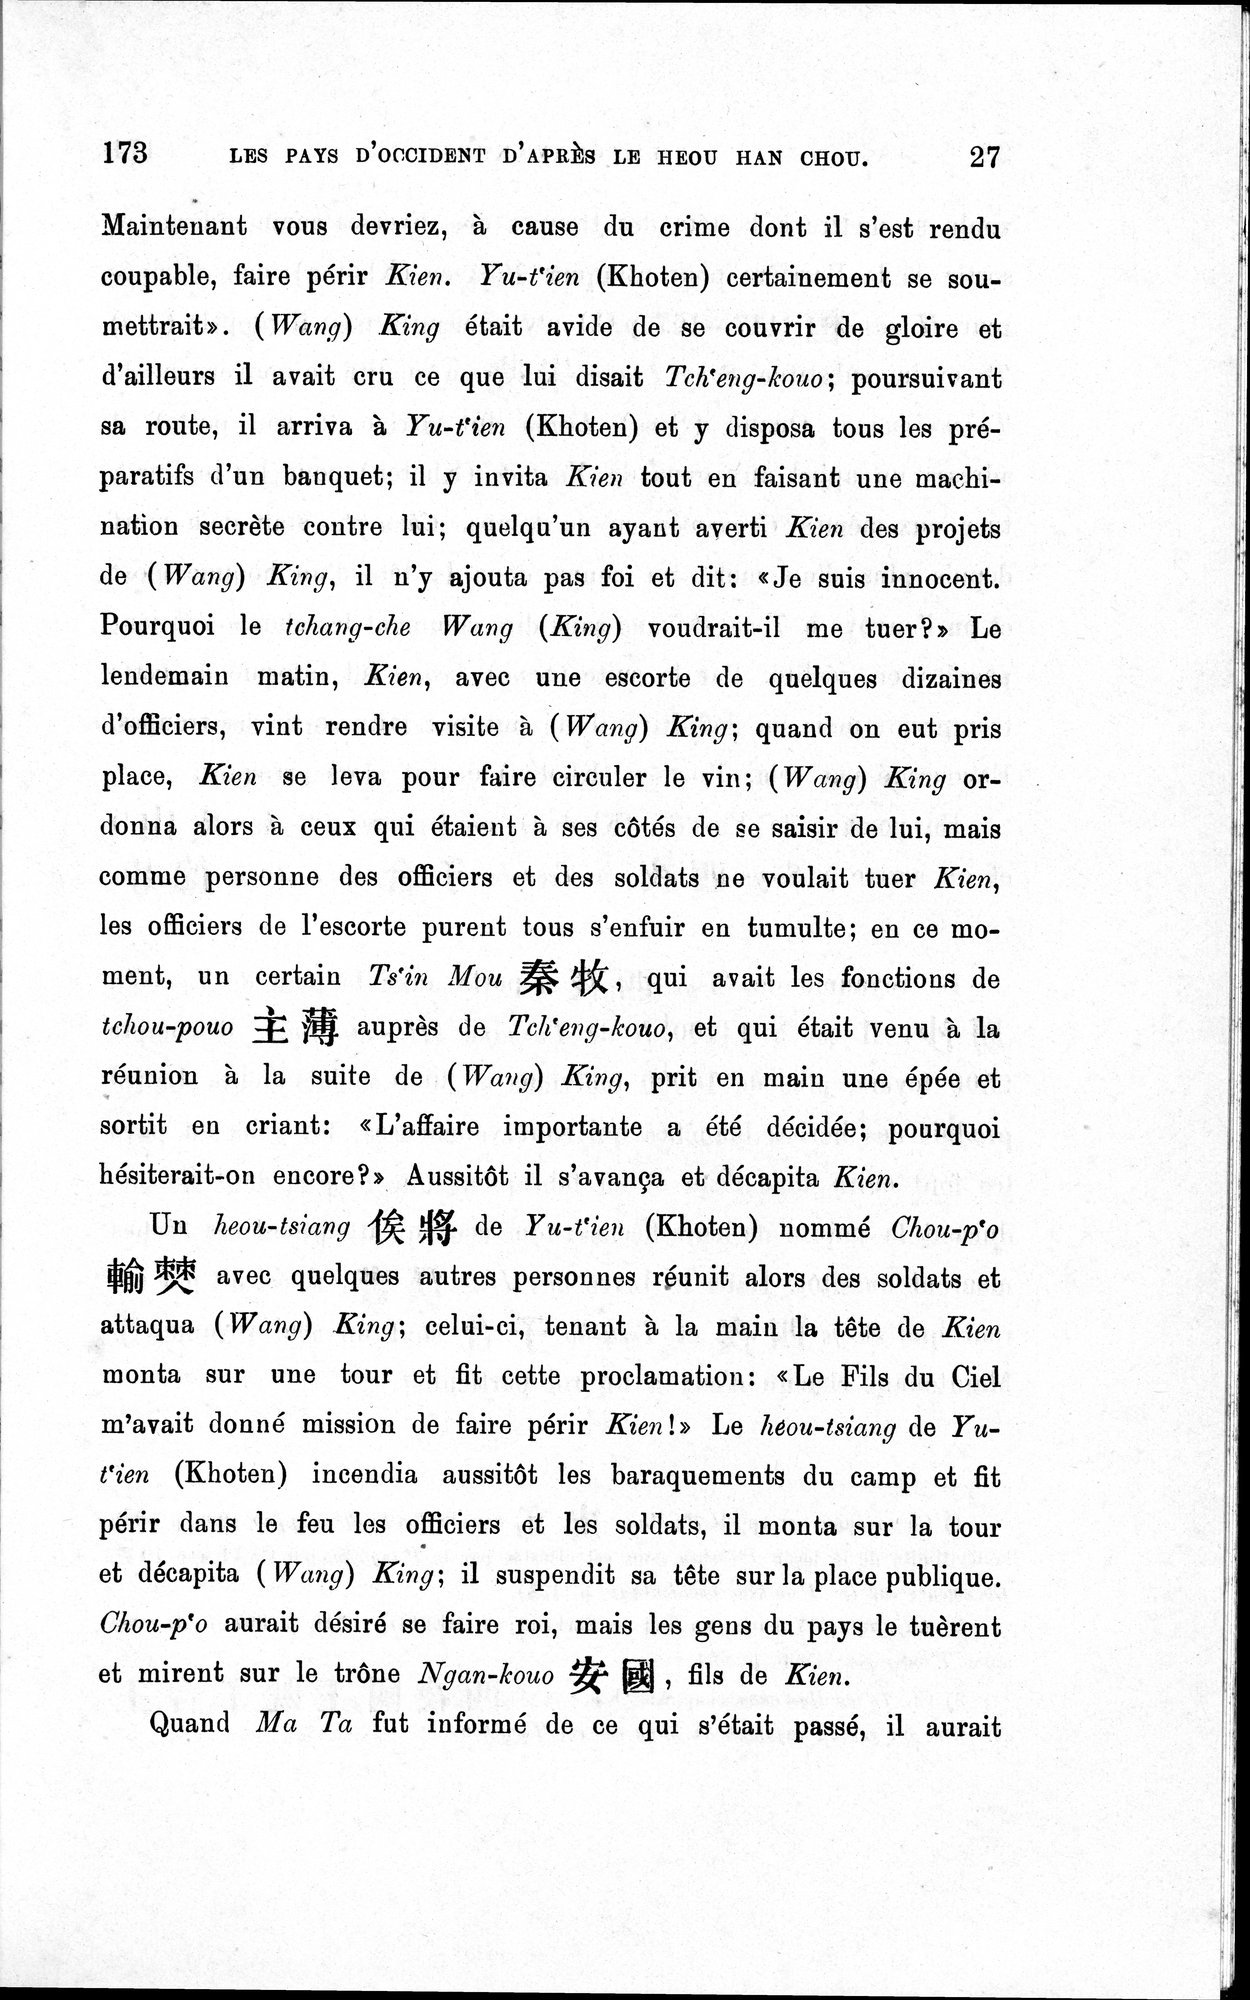 Les pays d'Occident d'après le Heou Han Chou : vol.1 / Page 35 (Grayscale High Resolution Image)